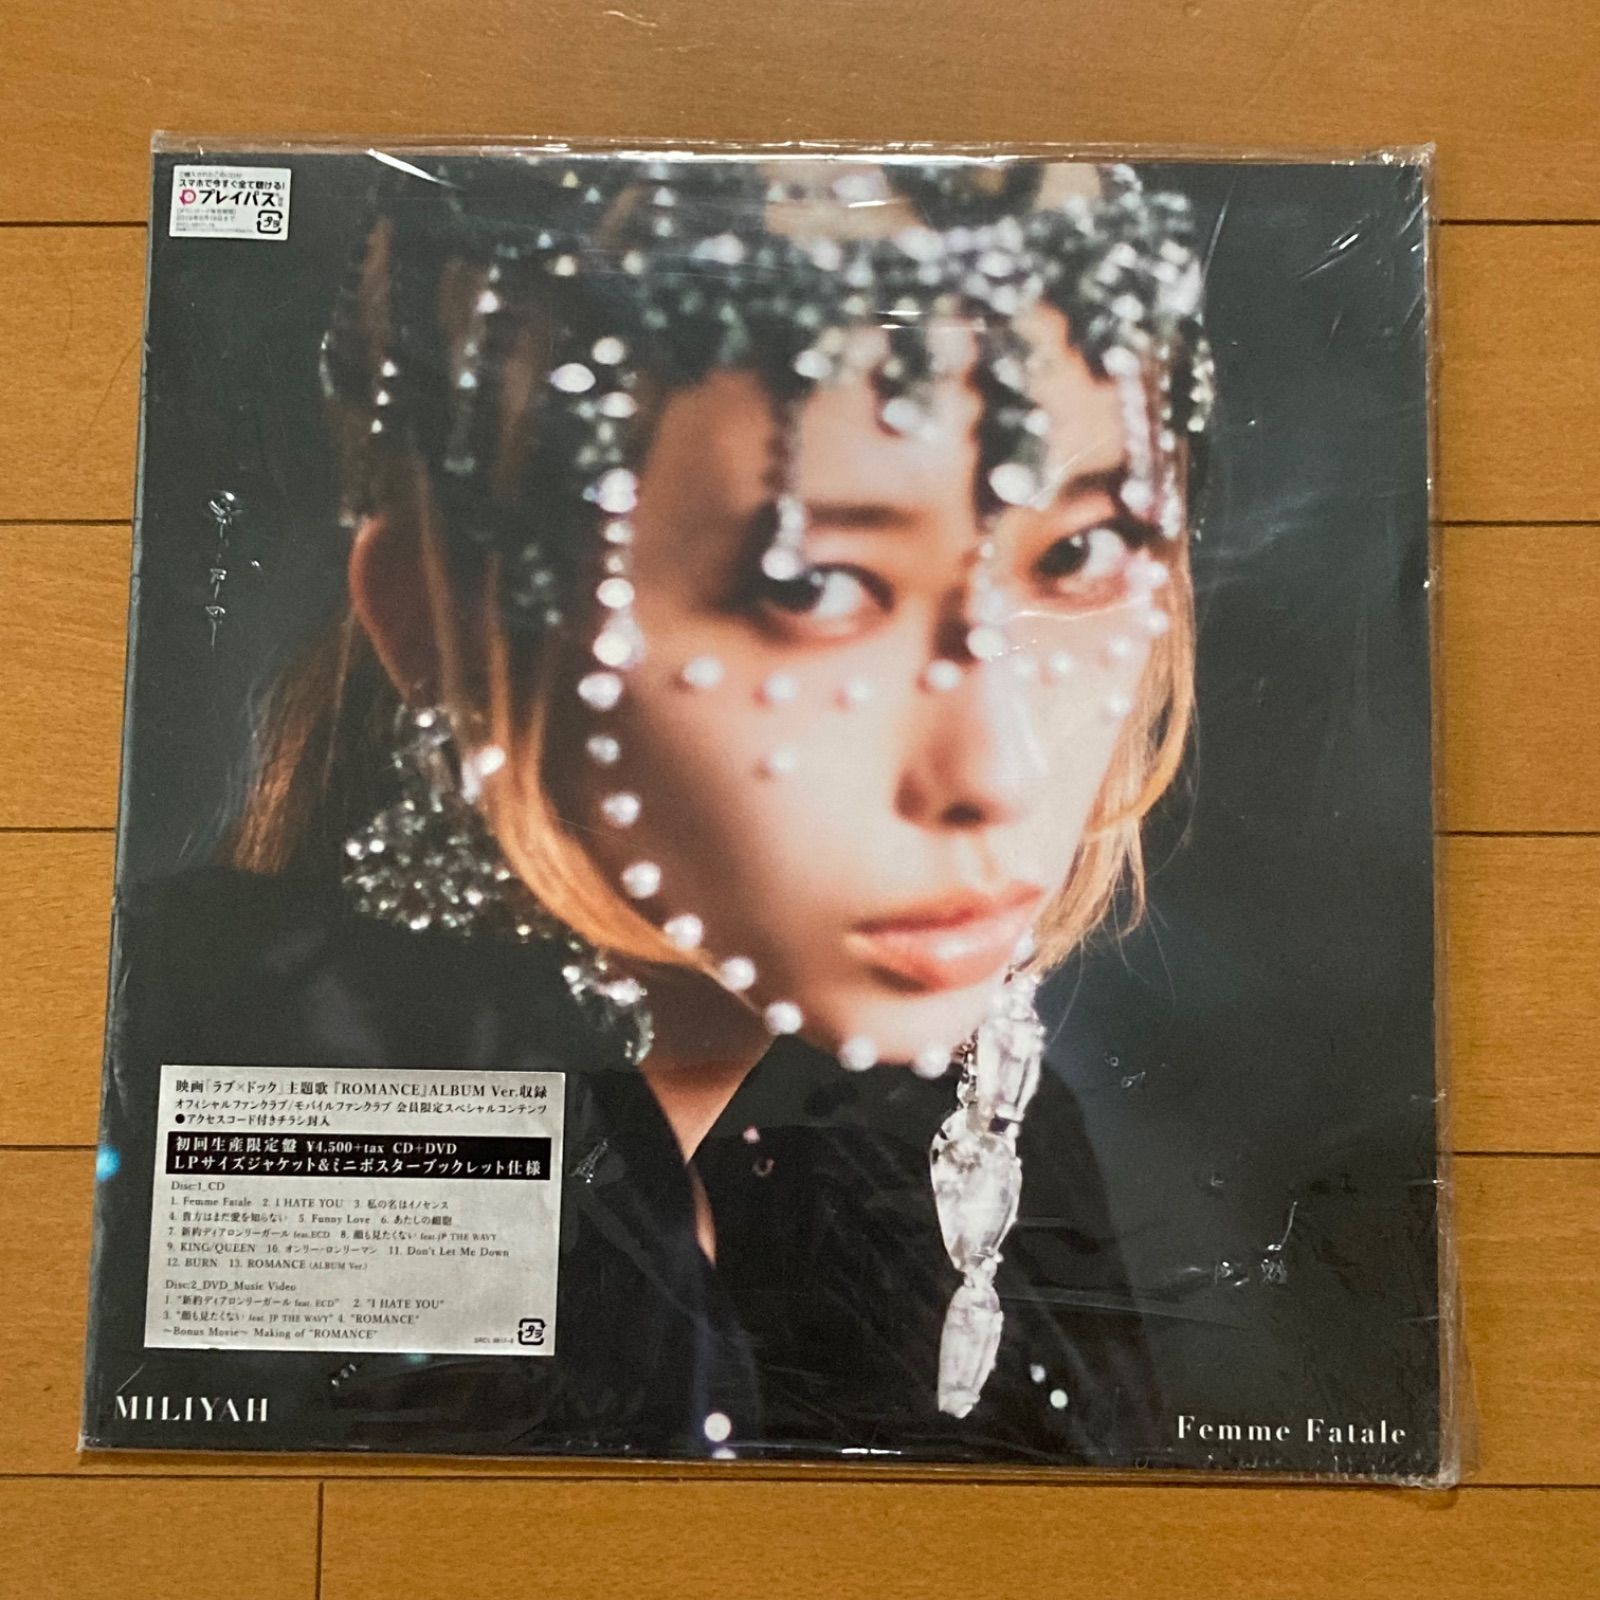 加藤ミリヤ/ Femme Fatale 初回生産限定盤 【CD+DVD】 - メルカリ